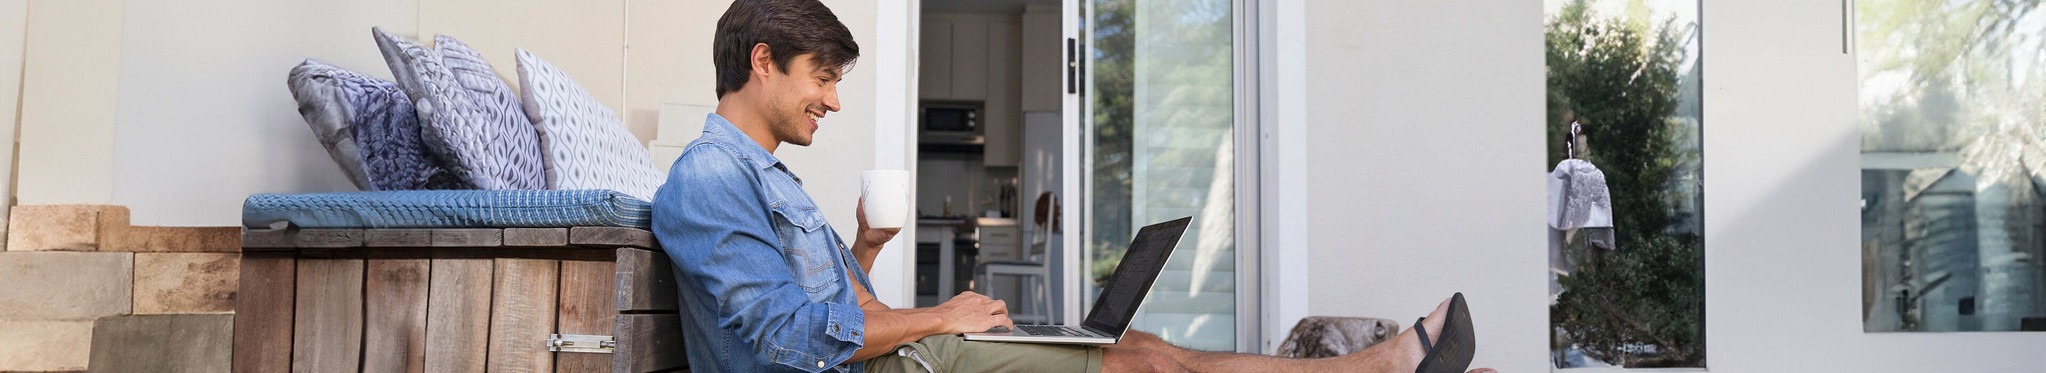 Mann sitzt auf Terrasse und freut sich über seine digitale Zeiterfassung.